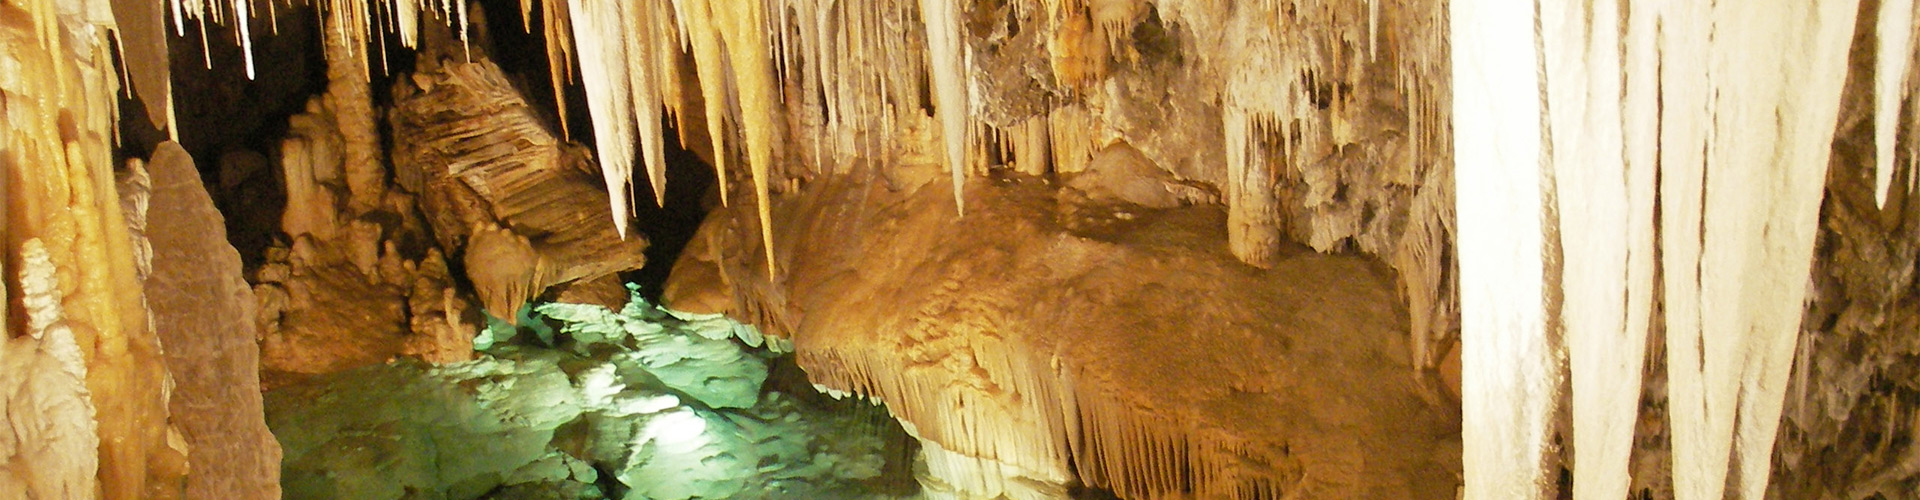 Grotte di Borgio Verezzi, le più colorate d’Italia